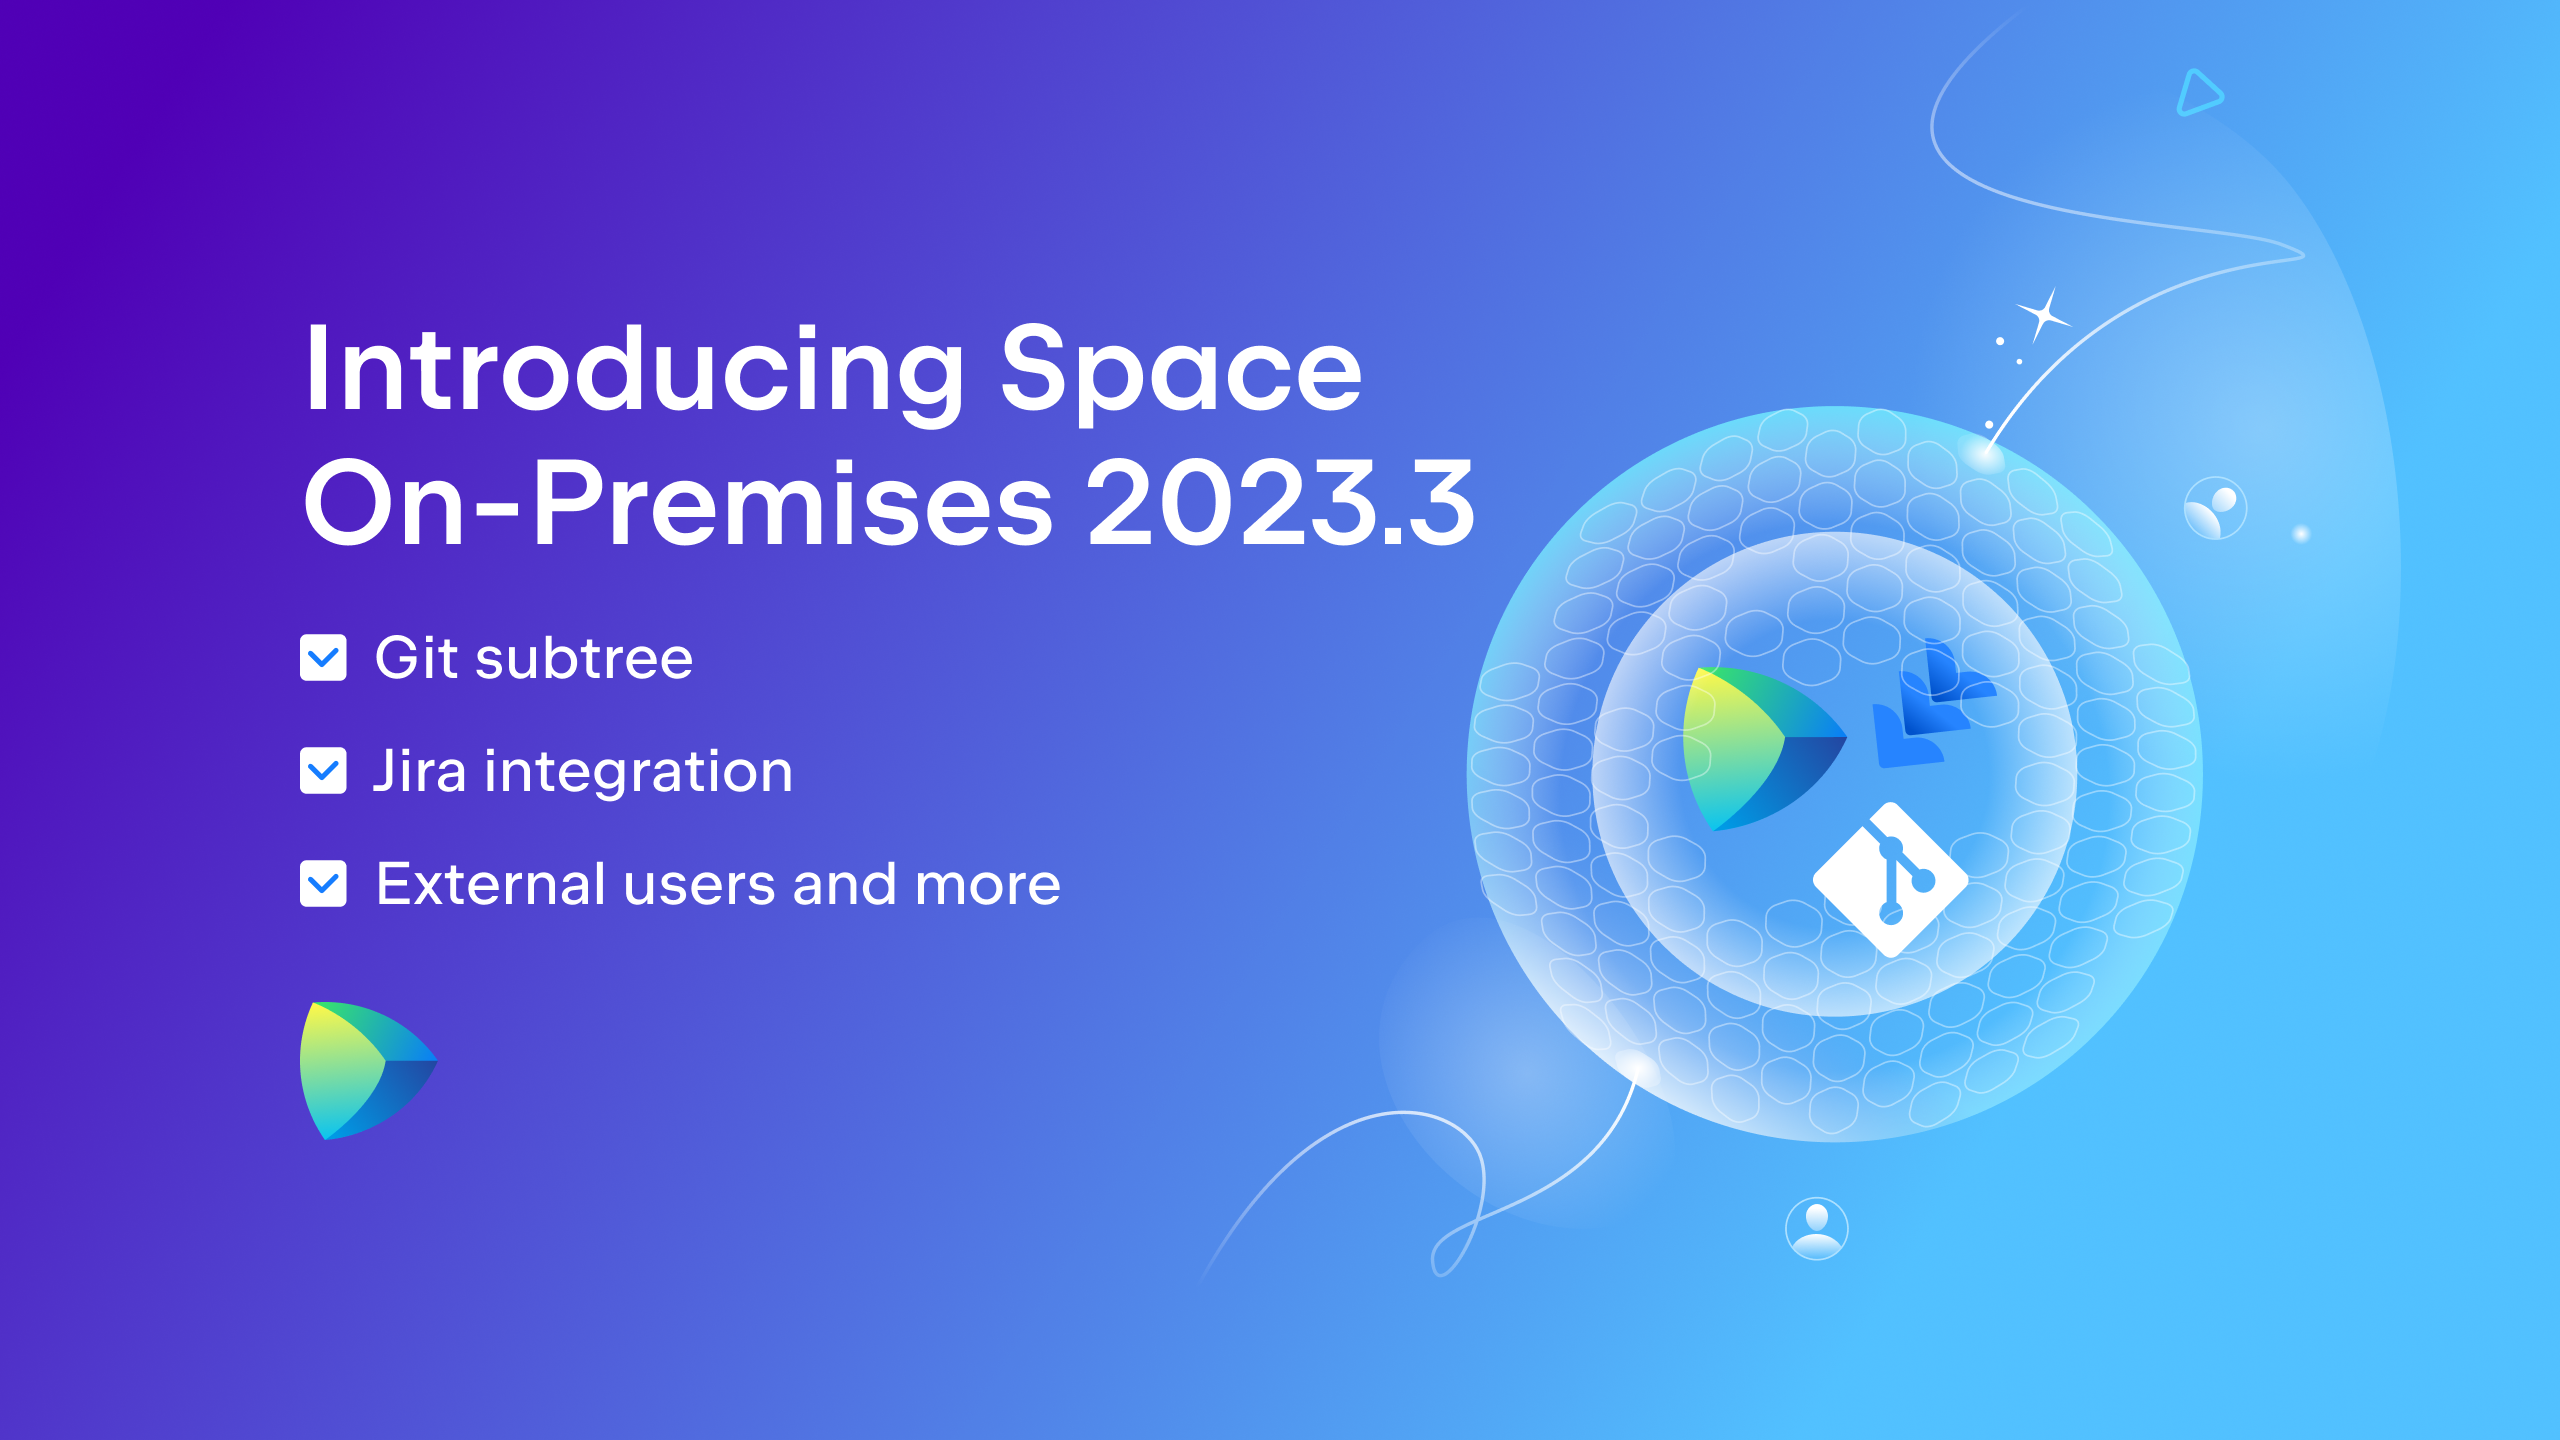 Space On-Premises 2023.3